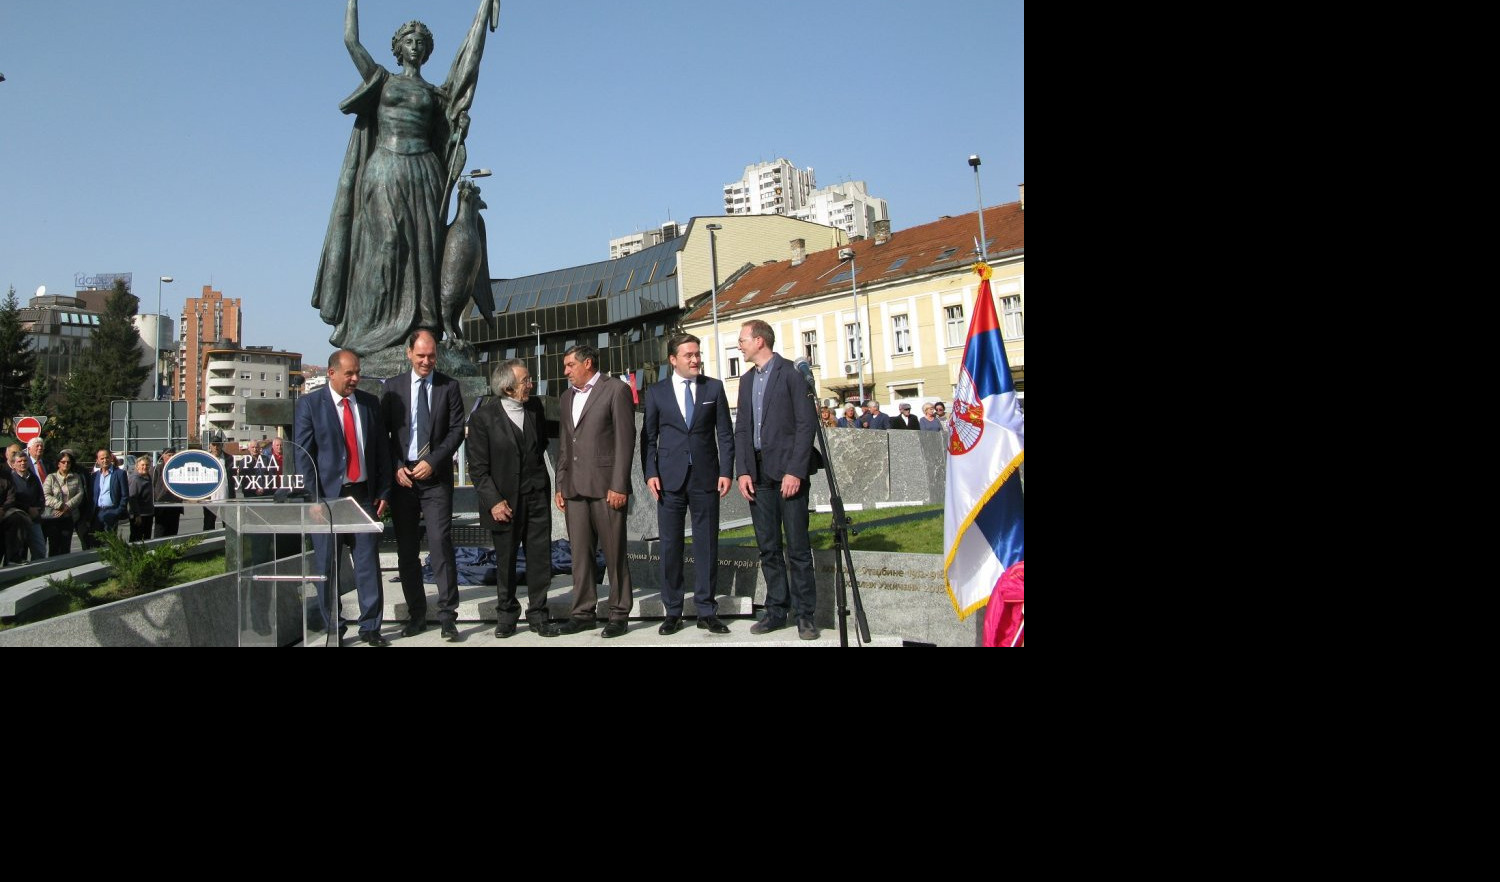 (FOTO) SELAKOVIĆ U UŽICU OTKRIO SPOMENIK U ZNAK OSLOBOĐENJA: VELIKA POBEDA je spomenik Srpkinji, majci, ženi i sestri, onoj koja je rodila heroje!